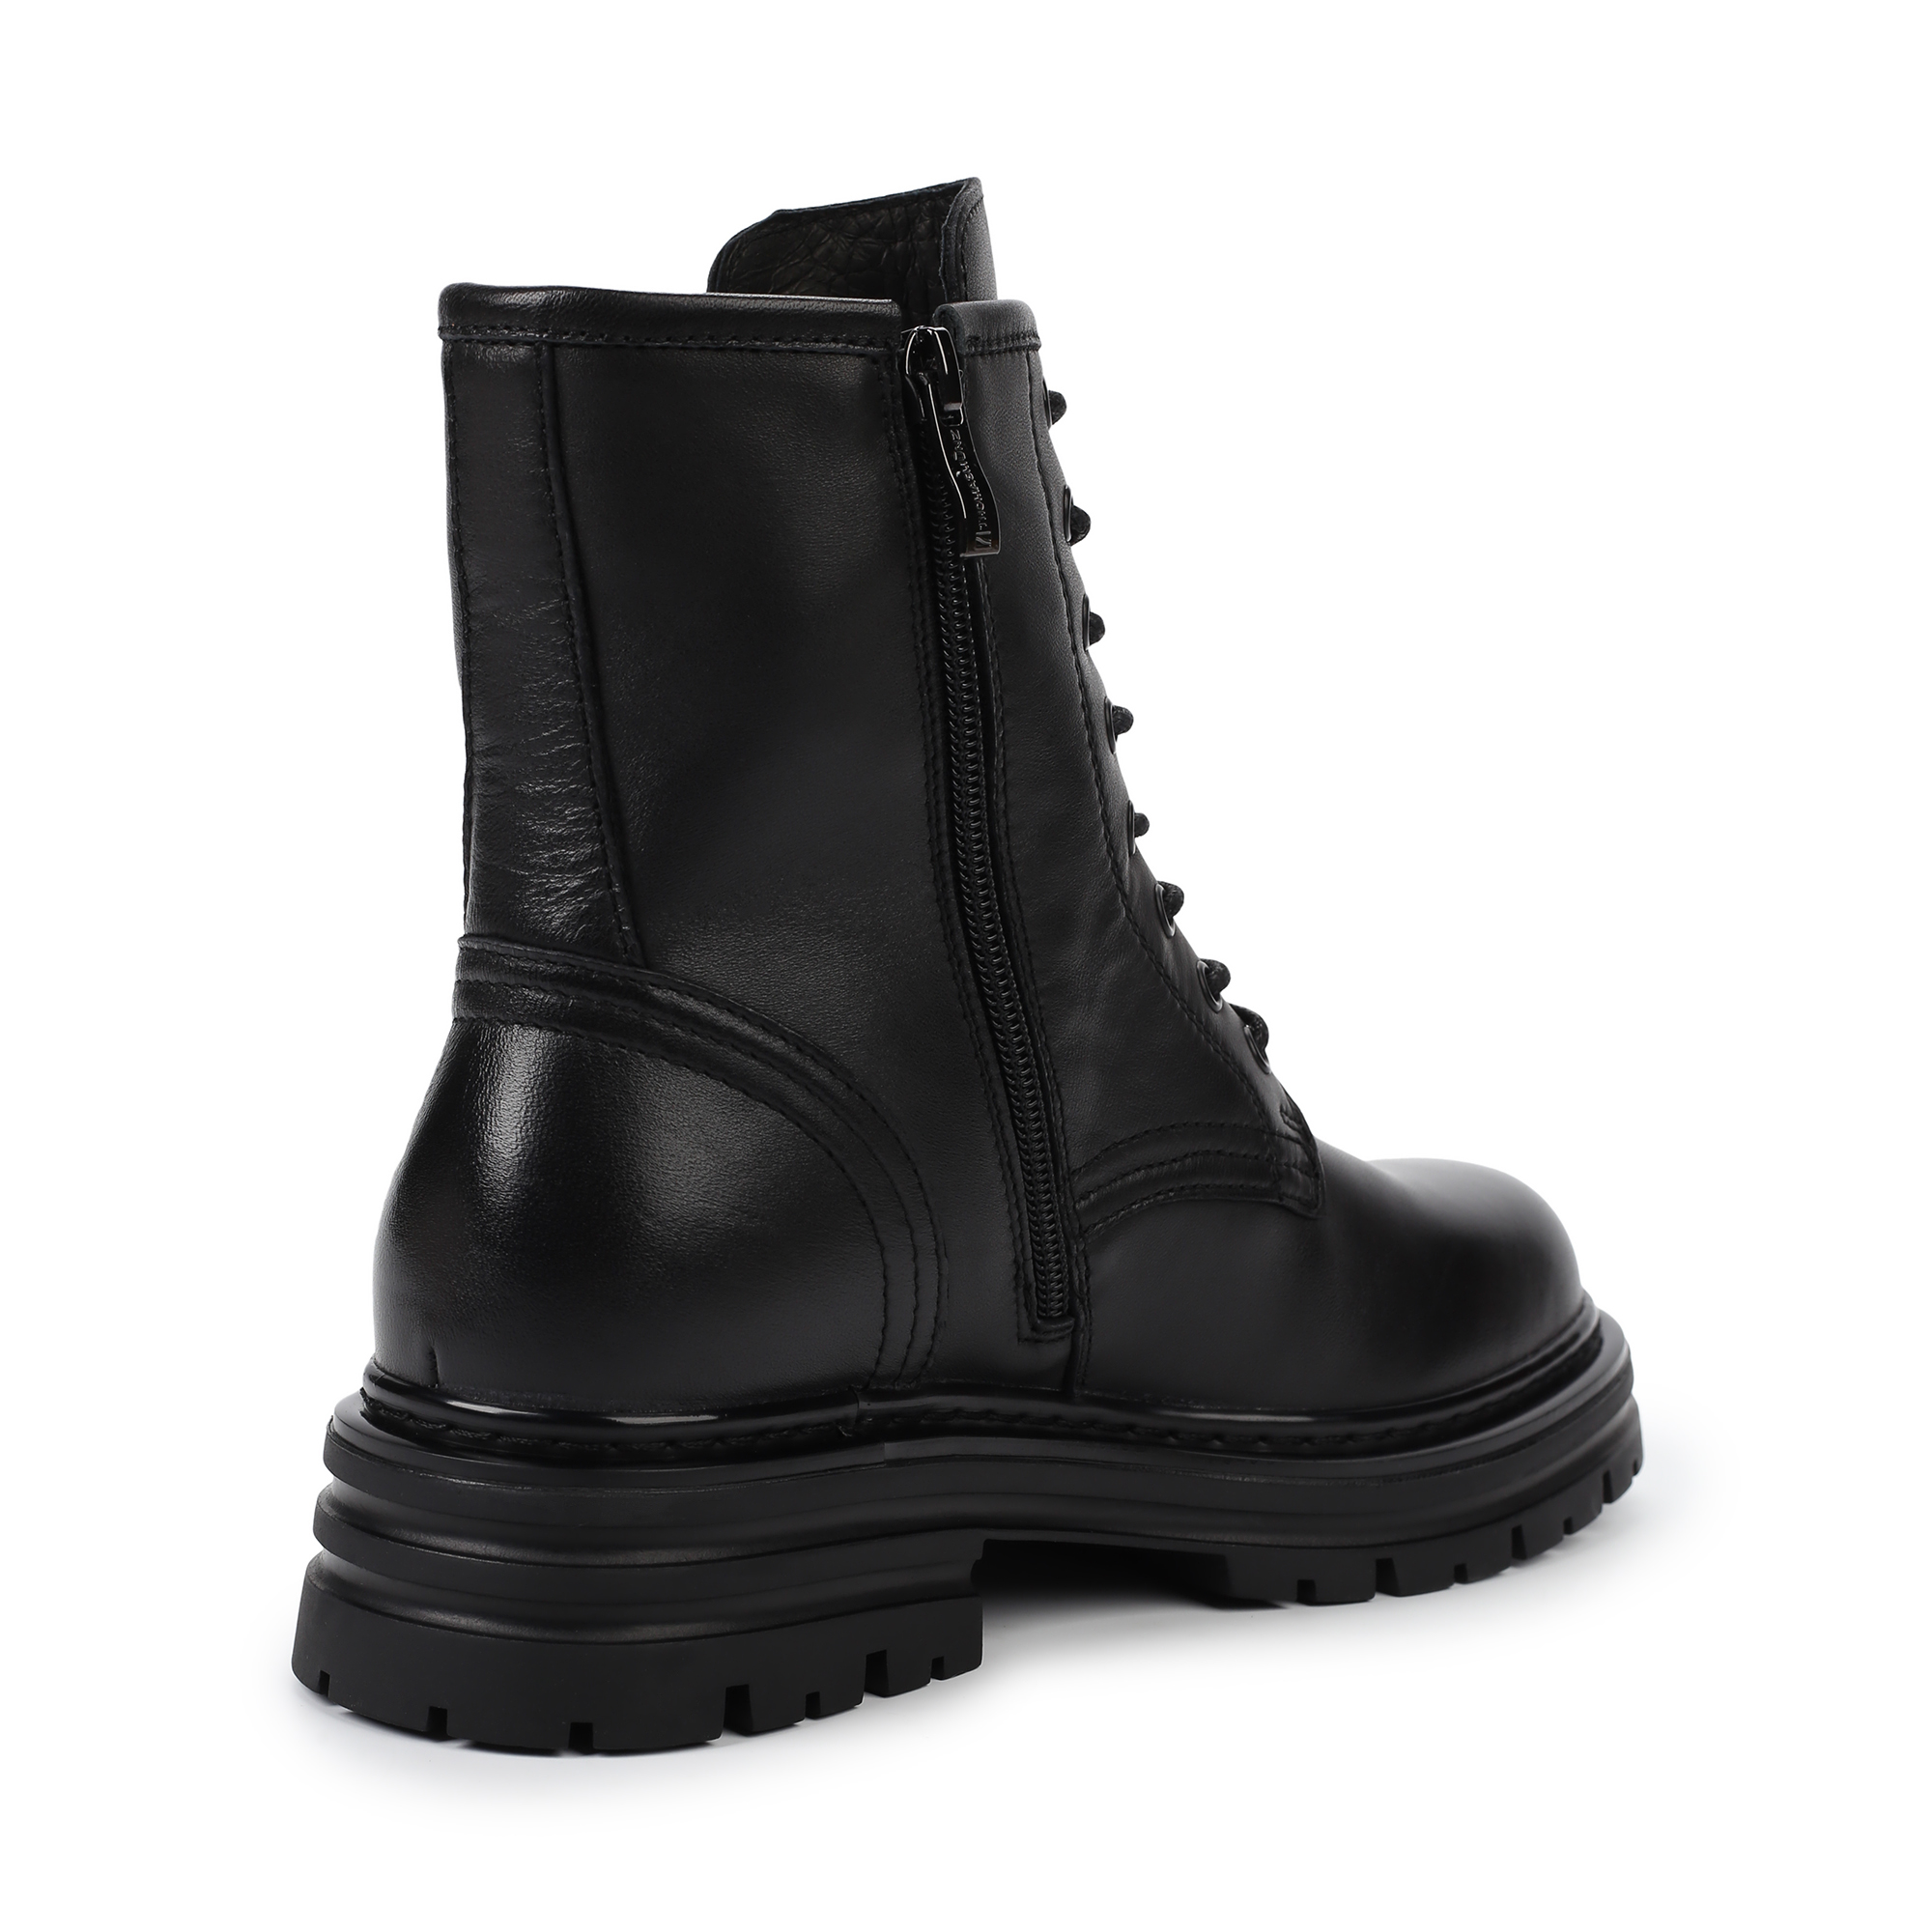 Ботинки Thomas Munz 104-687C-2102, цвет черный, размер 36 - фото 3